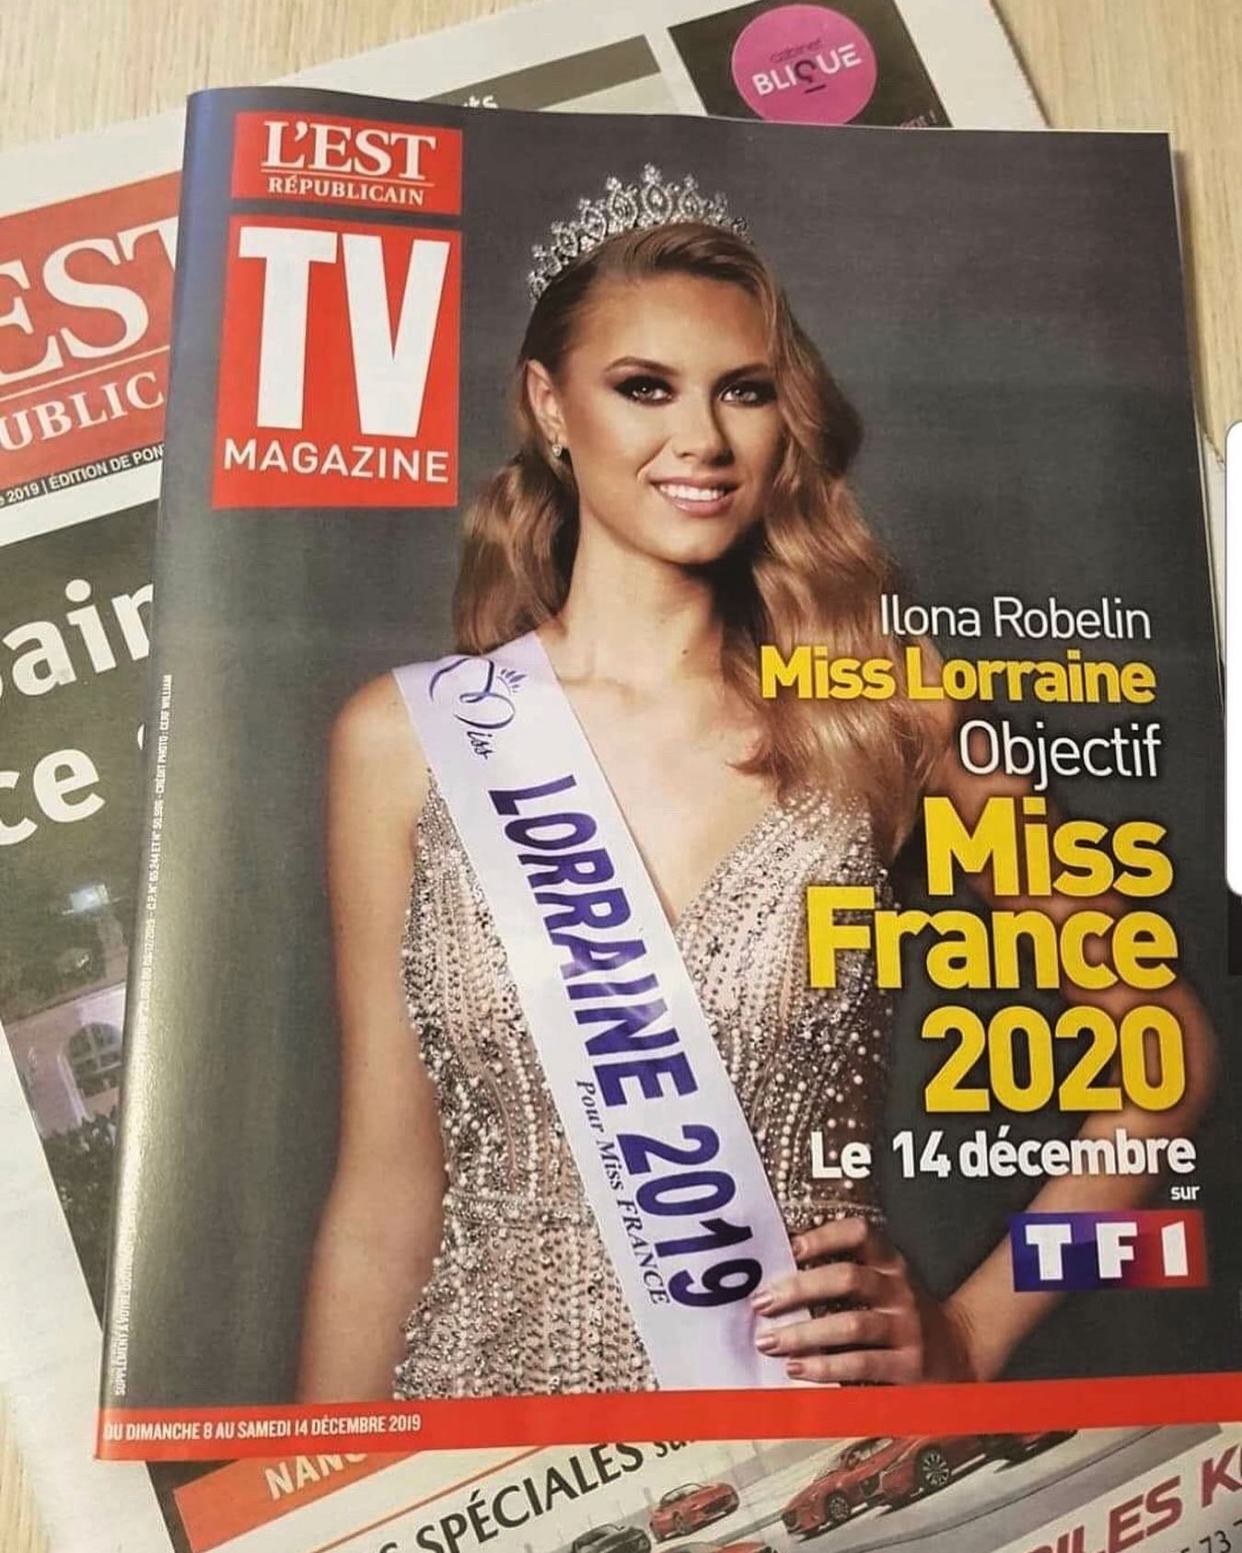 环球美女:伊洛娜·罗伯林,获得过洛林小姐的法国美女!